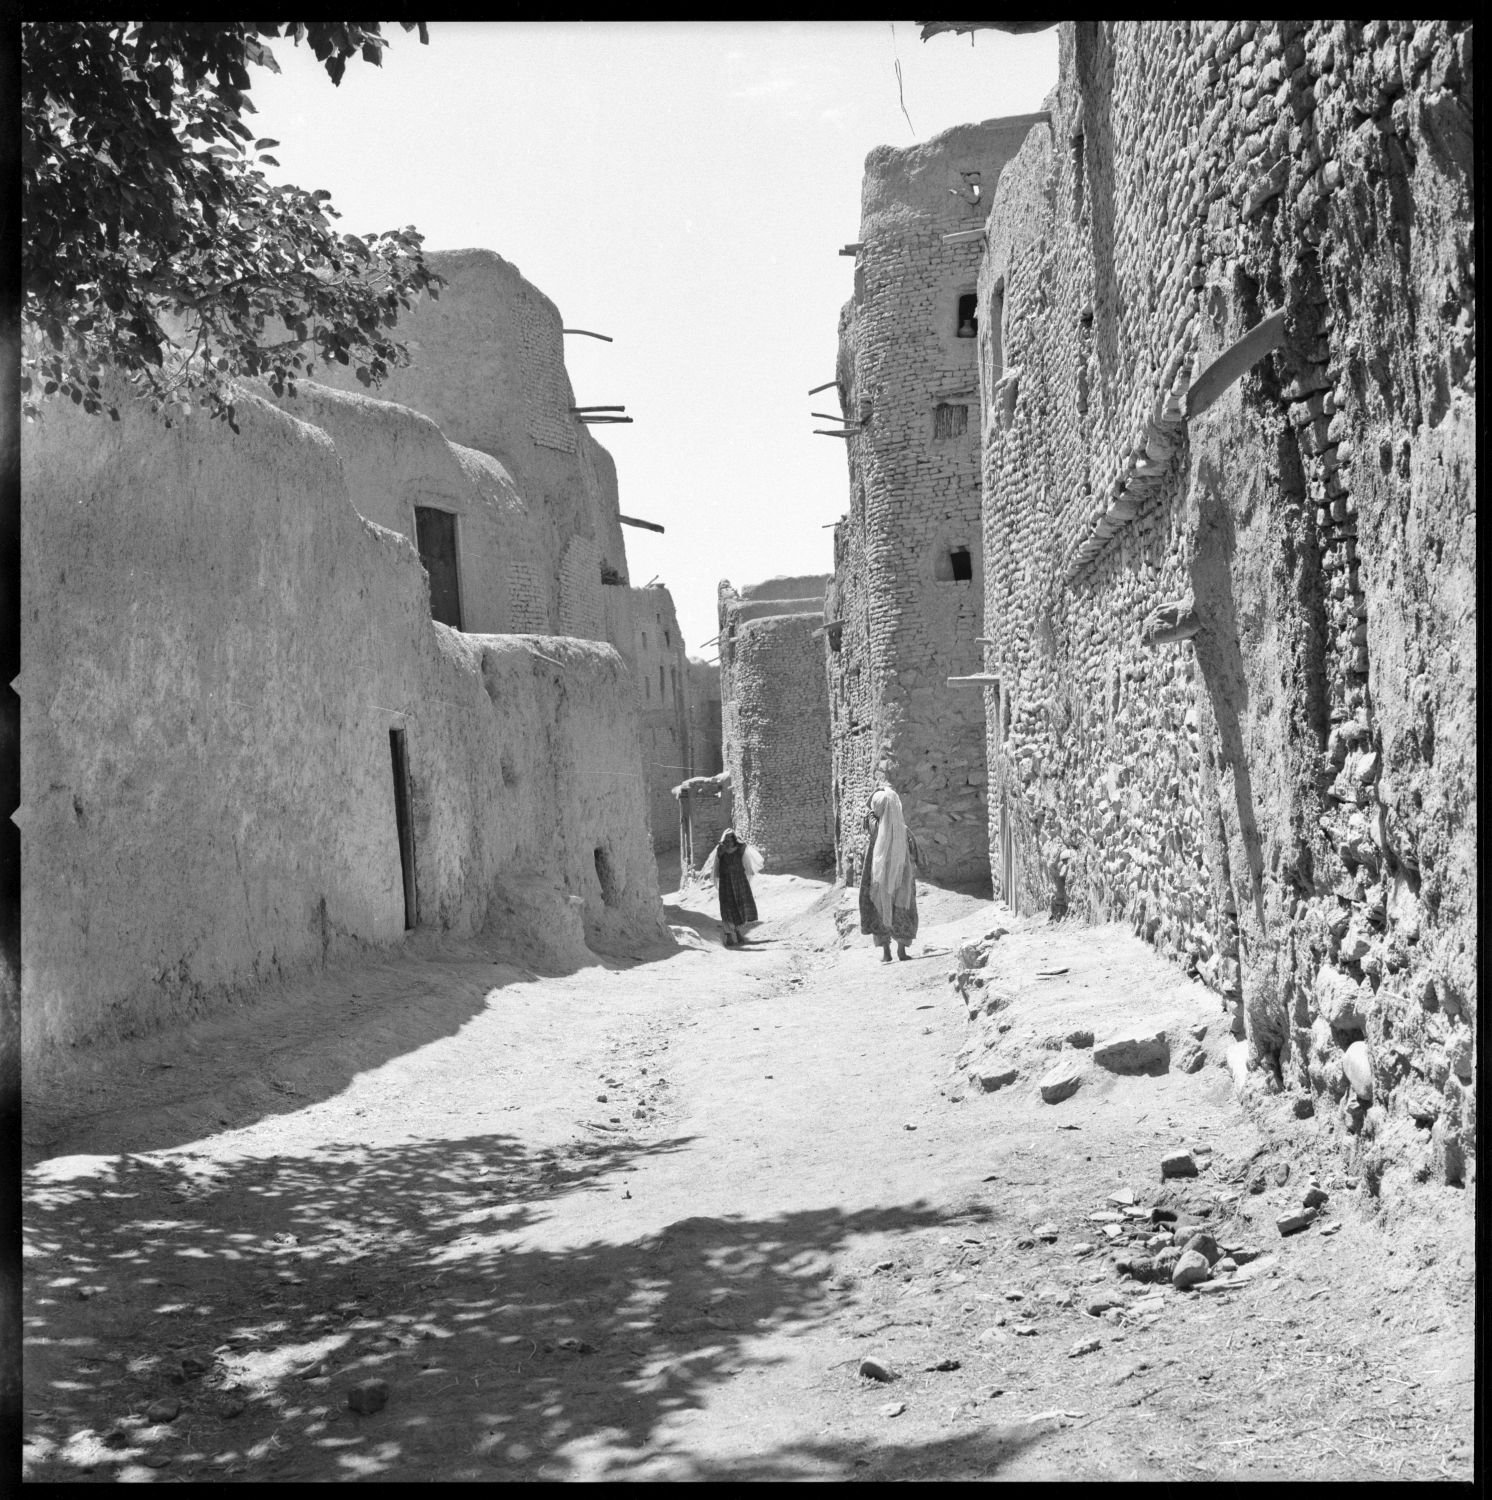 Pedestrians walk along narrow street between multi-story buildings with exposed roof poles in Ghazni, Afghanistan.